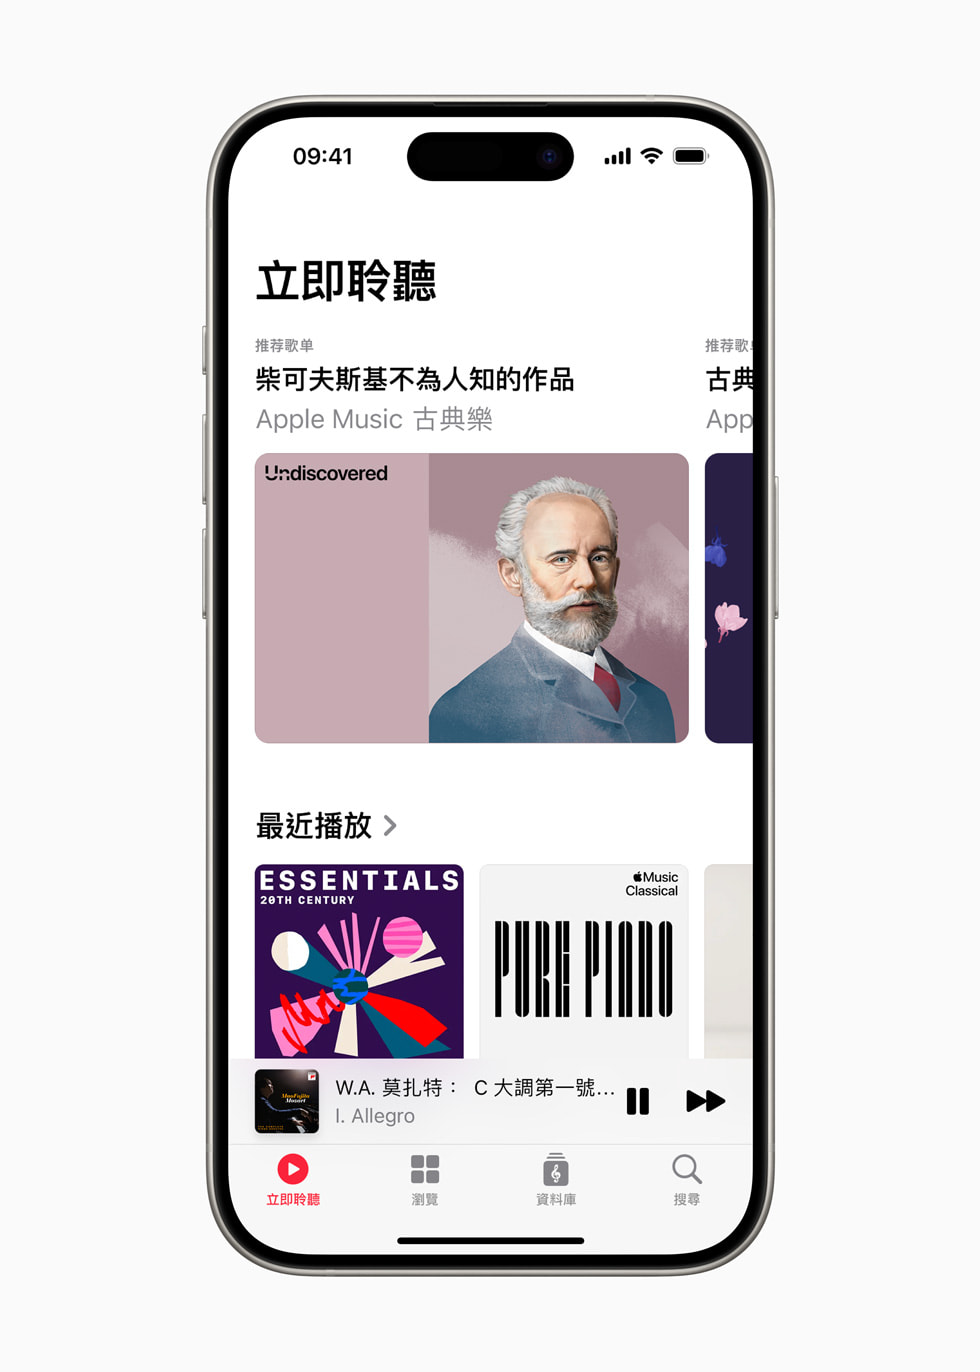 「Apple Music 古典樂」中的 Listen Now 頁面顯示在 iPhone 15 Pro 上。